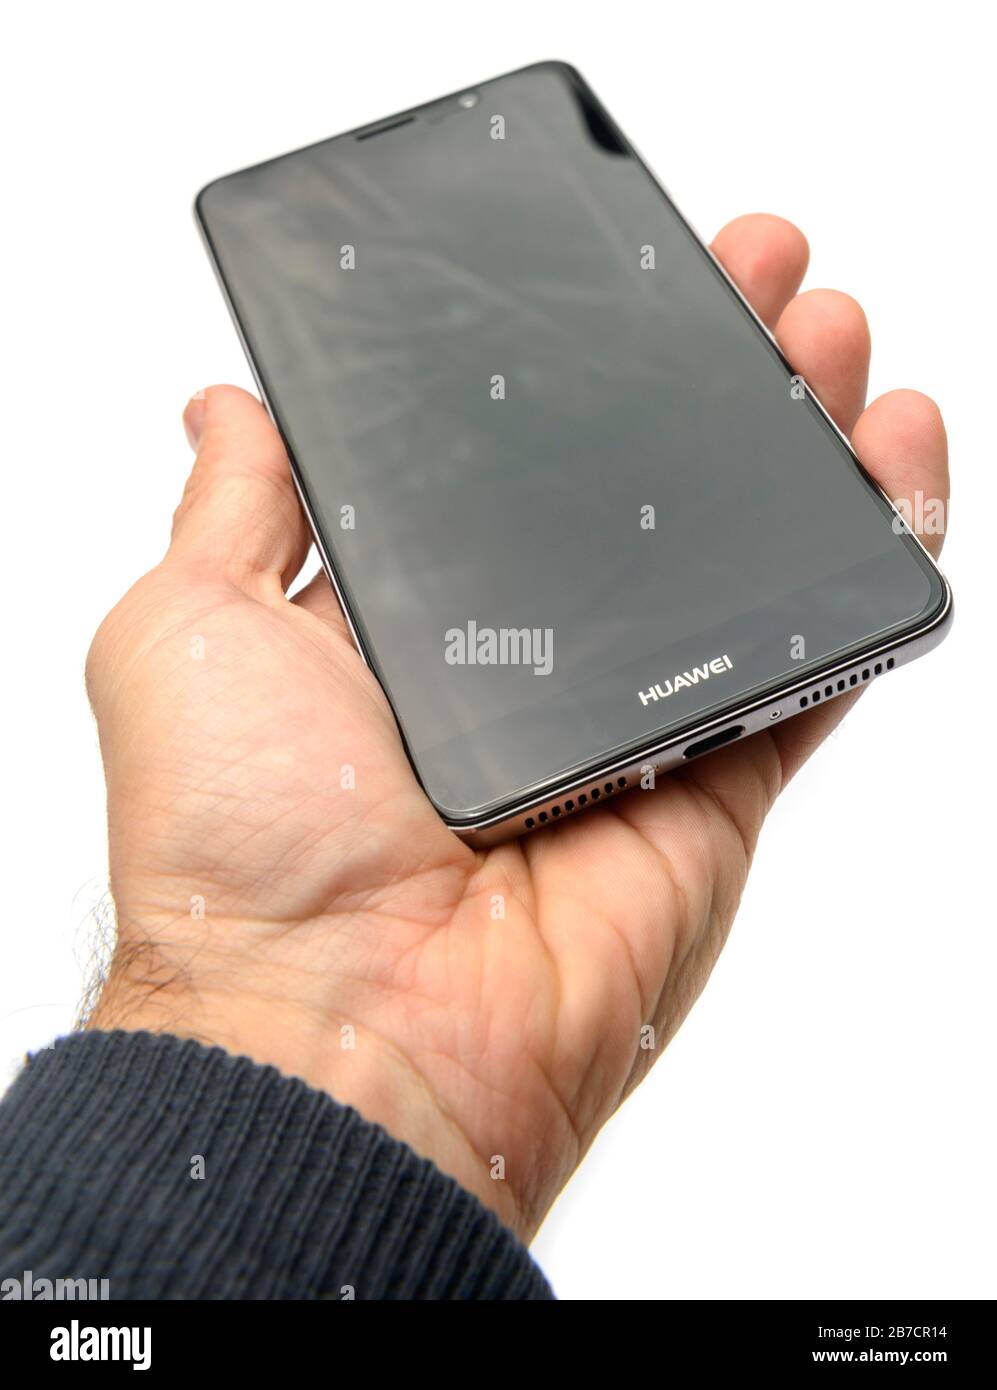 Mano sosteniendo el teléfono inteligente Huawei Mate 9 cortado sobre un fondo blanco Foto de stock